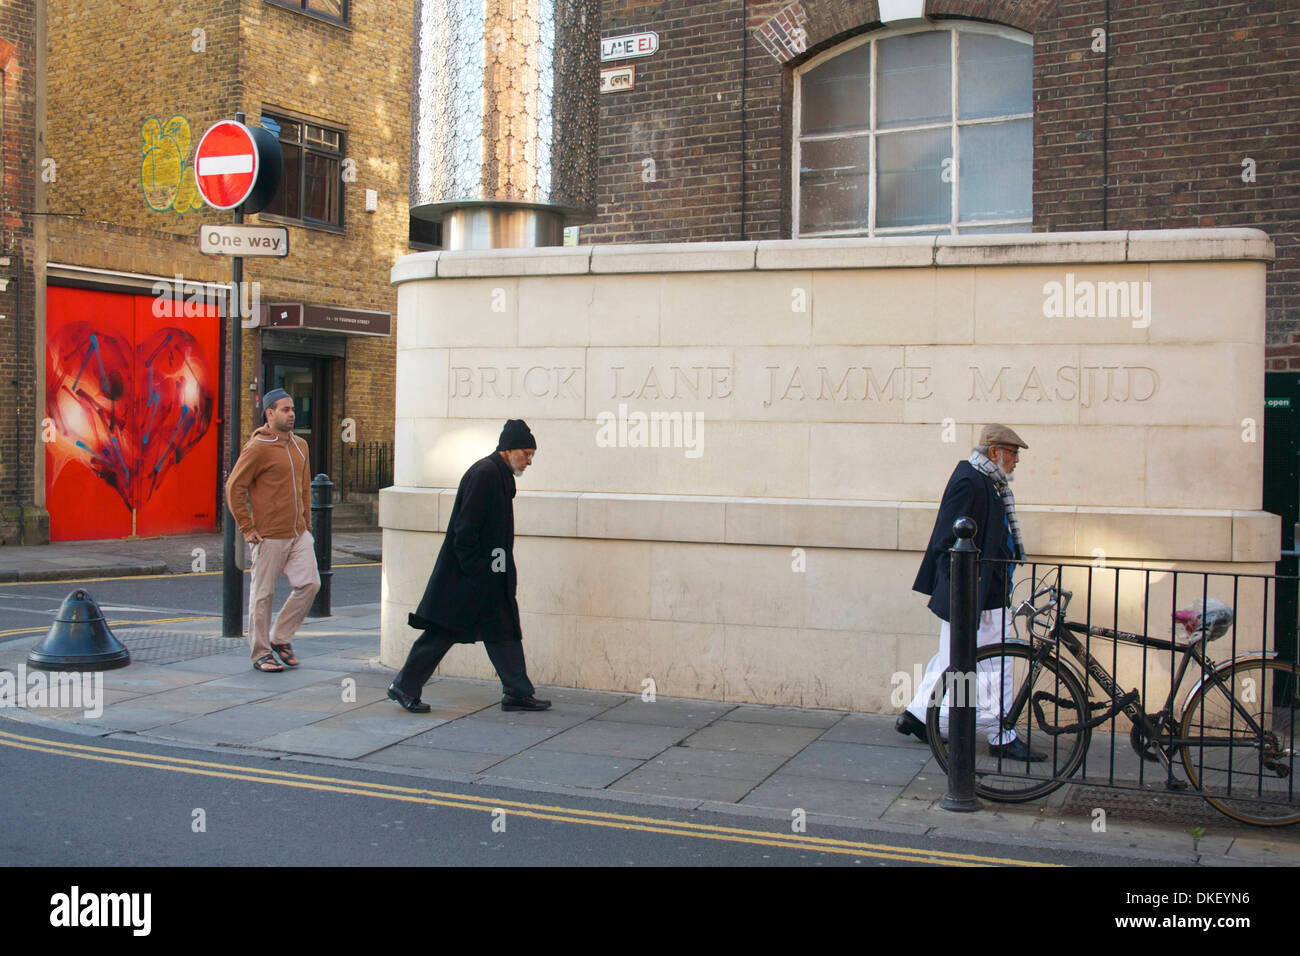 Brick Lane / mosquée Jamme Masjid, London, UK Banque D'Images